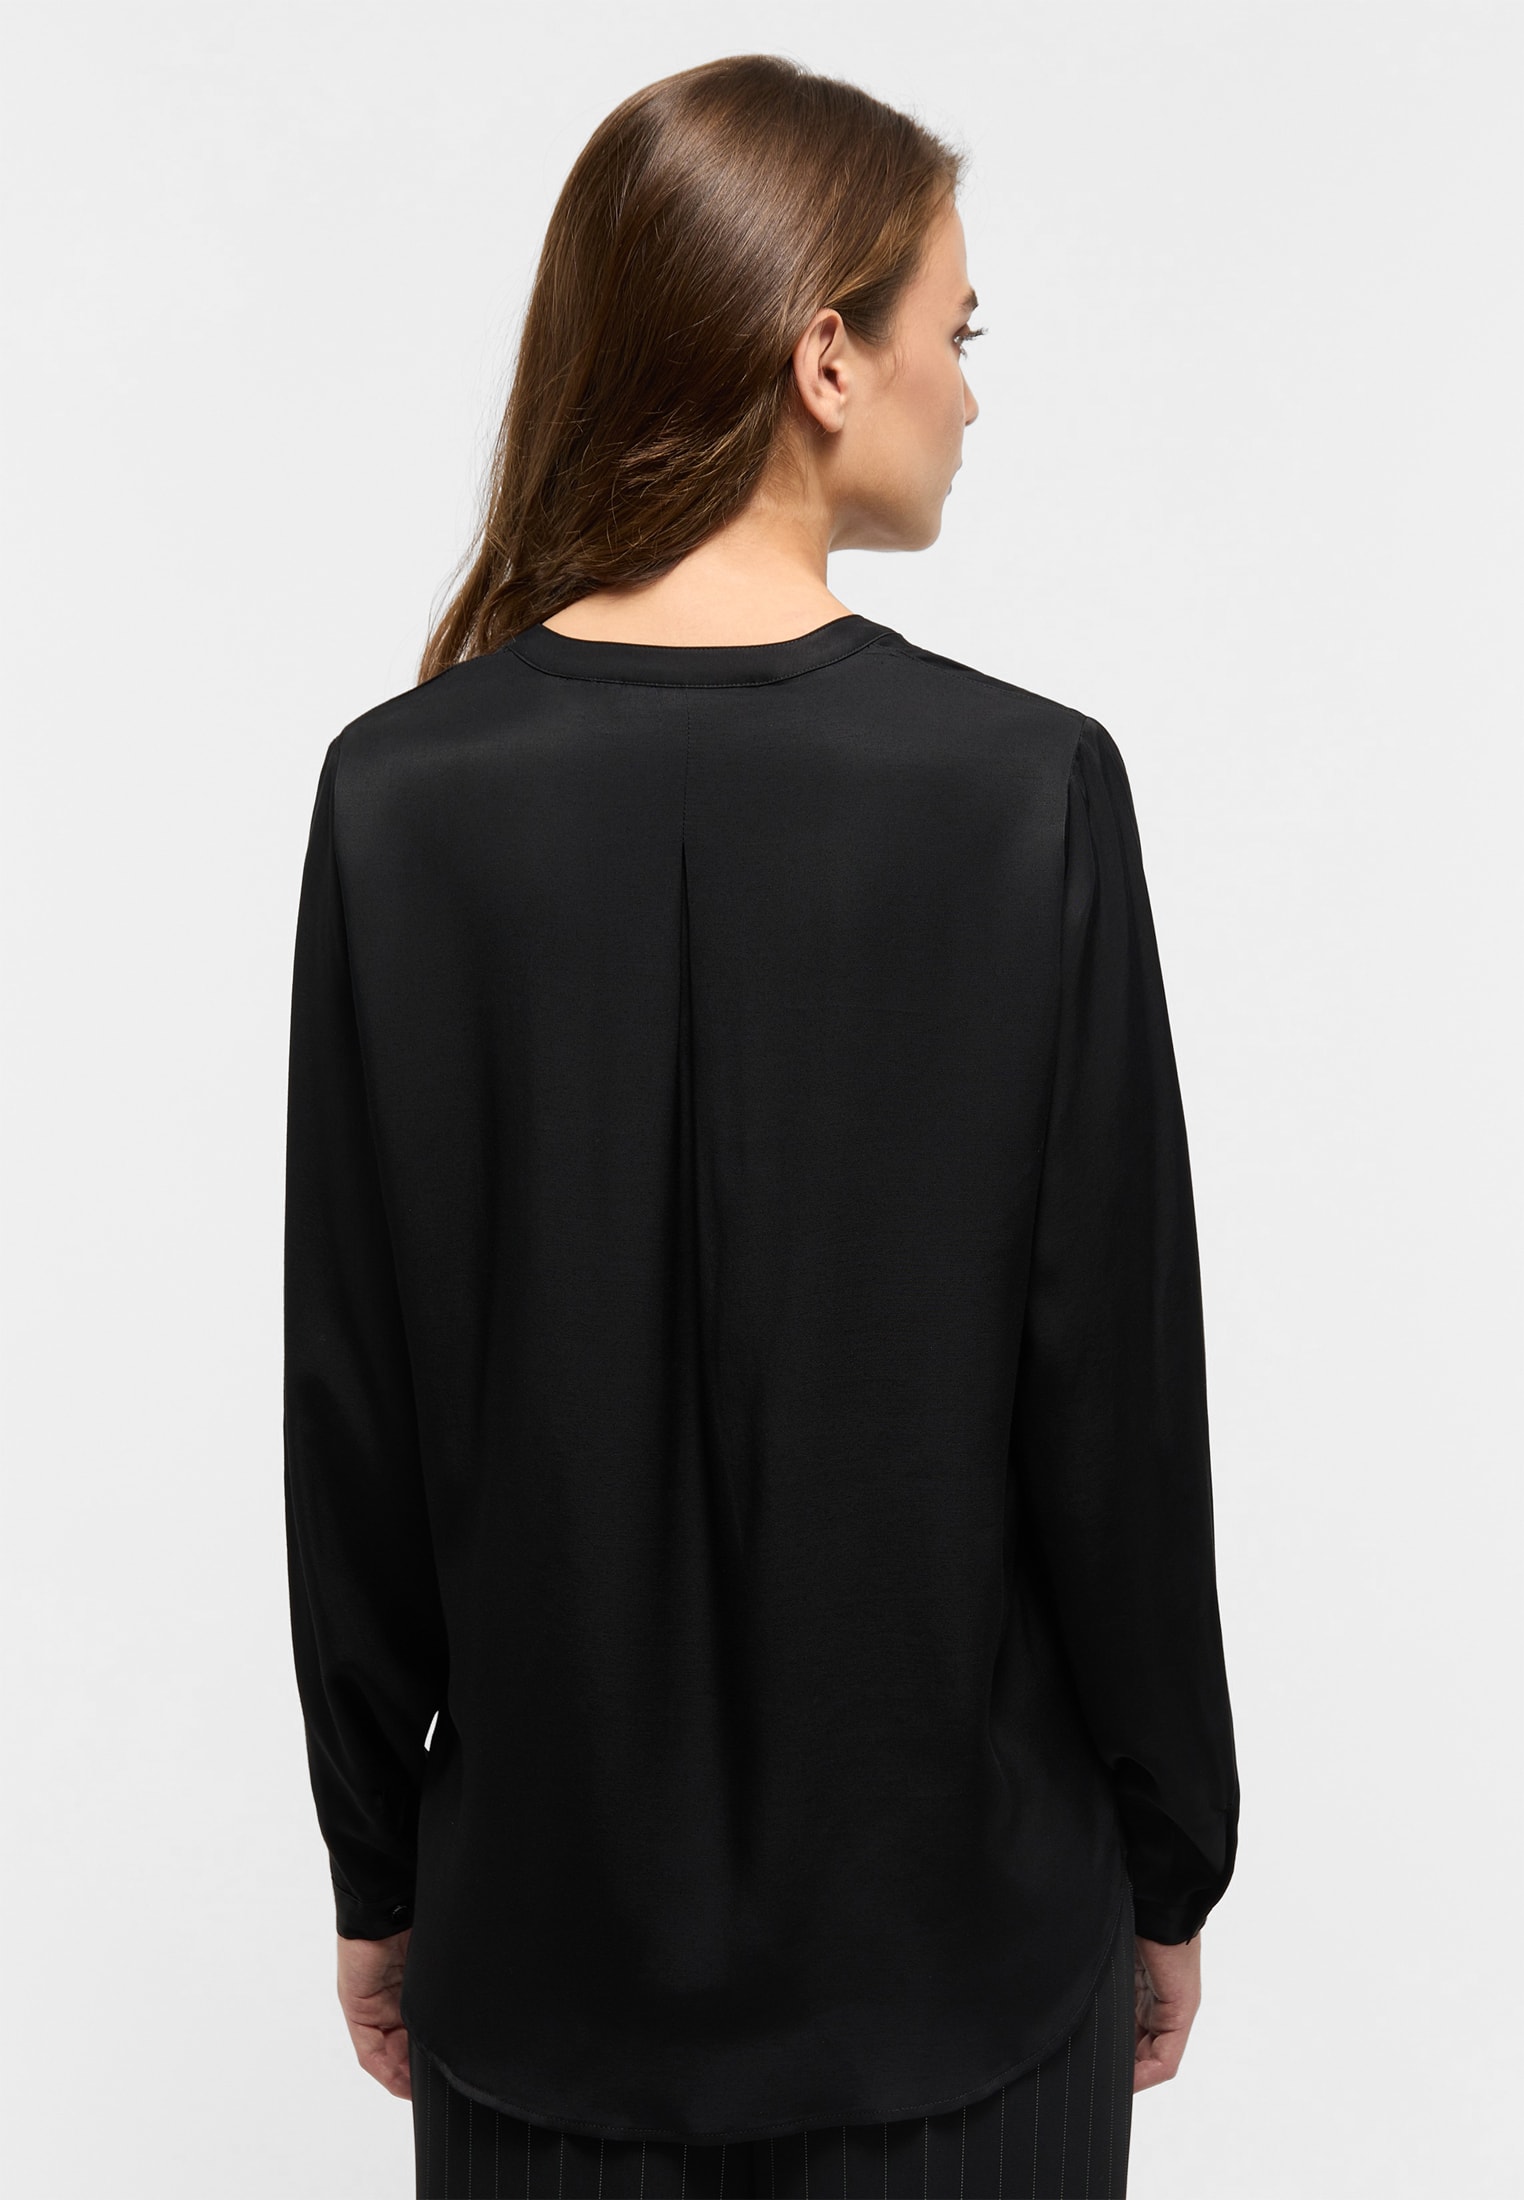 Viscose Shirt schwarz 2BL00329-03-91-34-1/1 schwarz Langarm Bluse in | | | 34 | unifarben